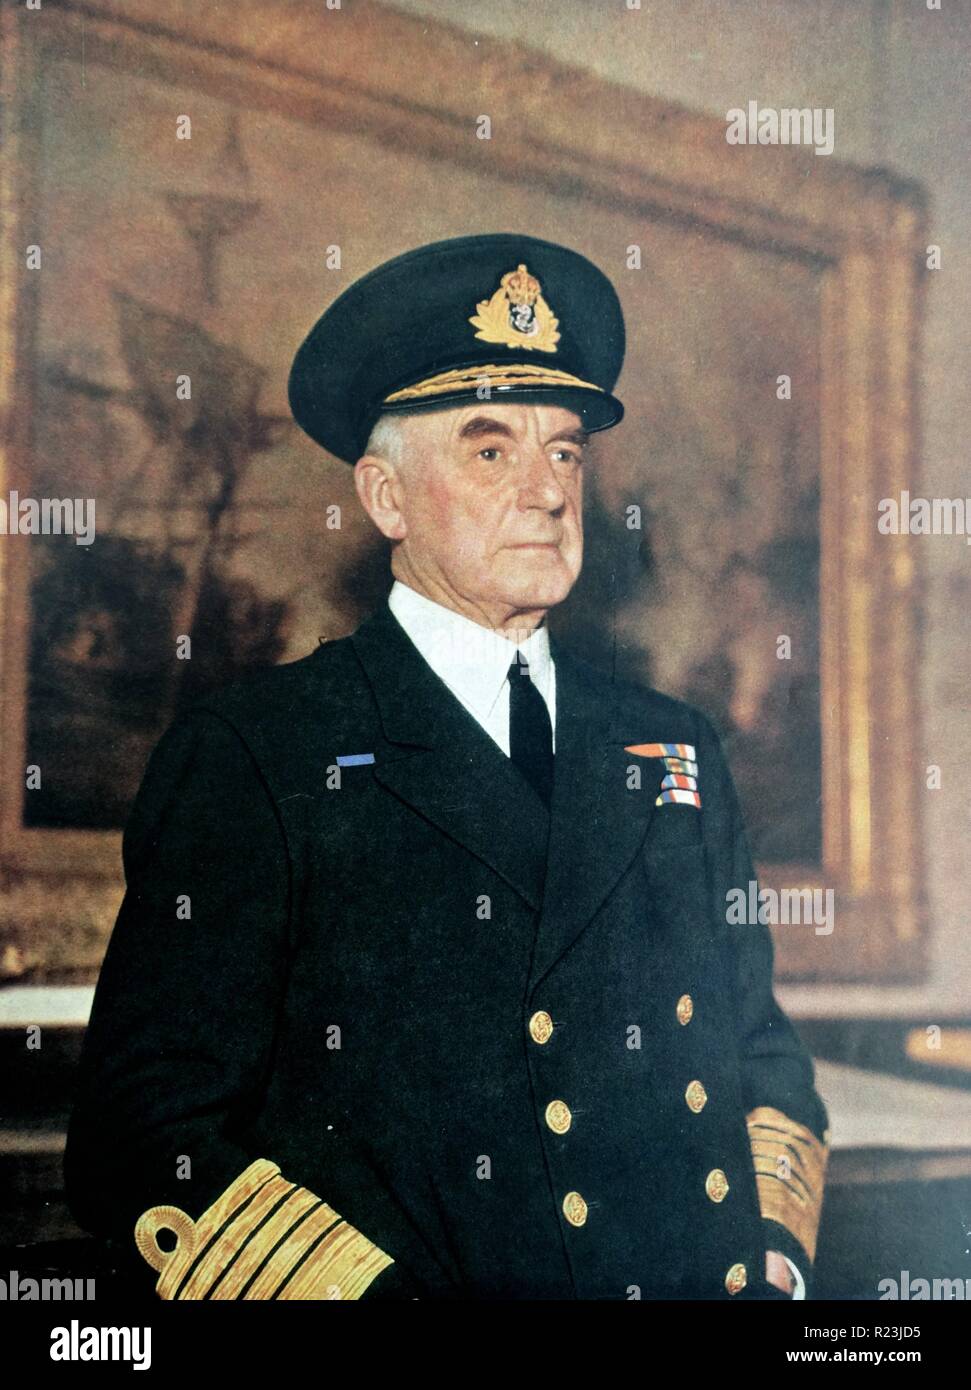 Foto von Sir Dudley Pound (1877-1943) Admiral der Flotte und einen Offizier der Royal Navy Farbe. Datiert 1940 Stockfoto